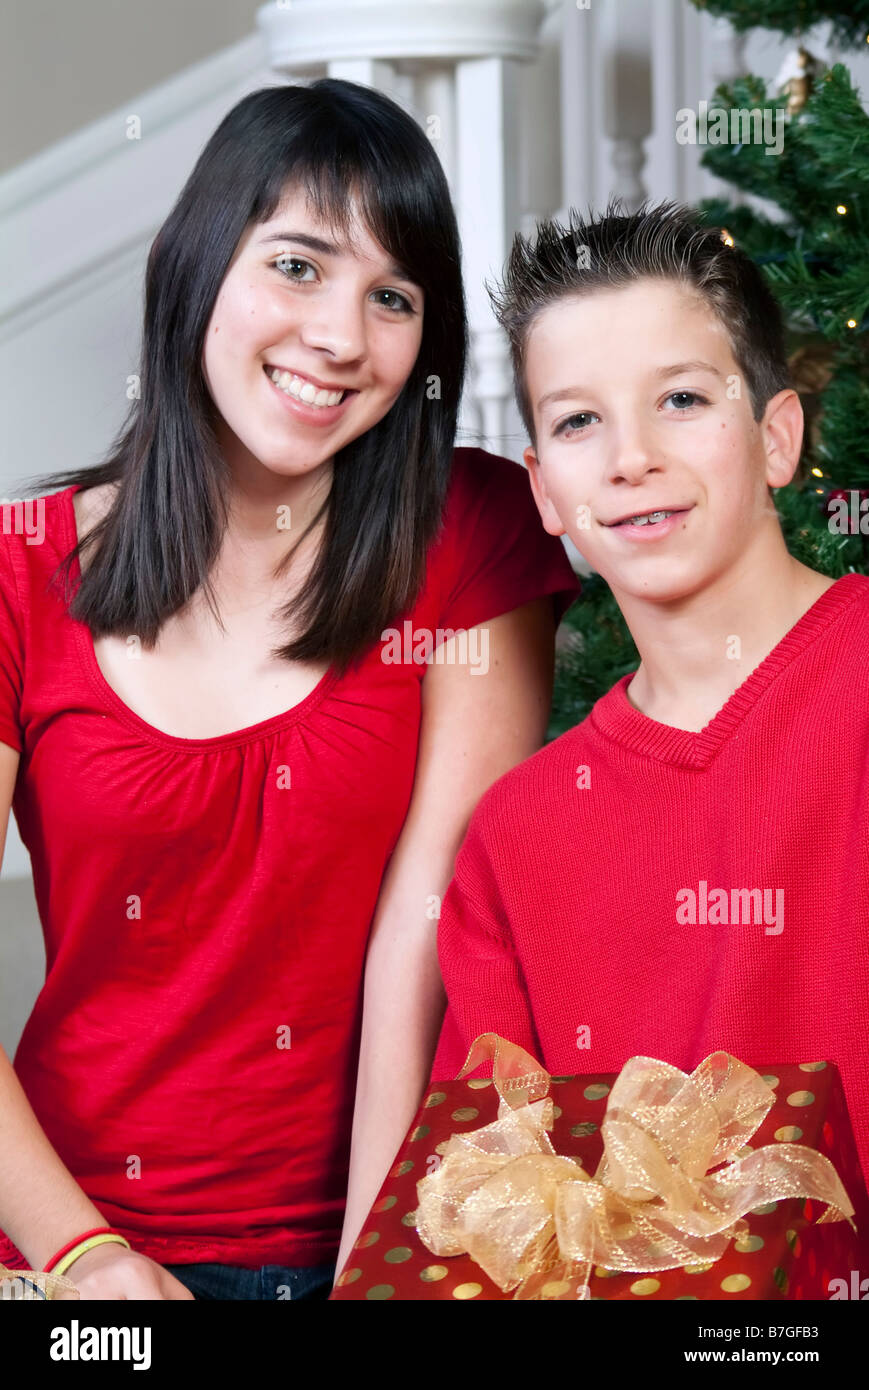 Bruder und Schwester von einem Weihnachtsbaum hält ein Geschenk mit schönen lächelnden Gesichtern Stockfoto